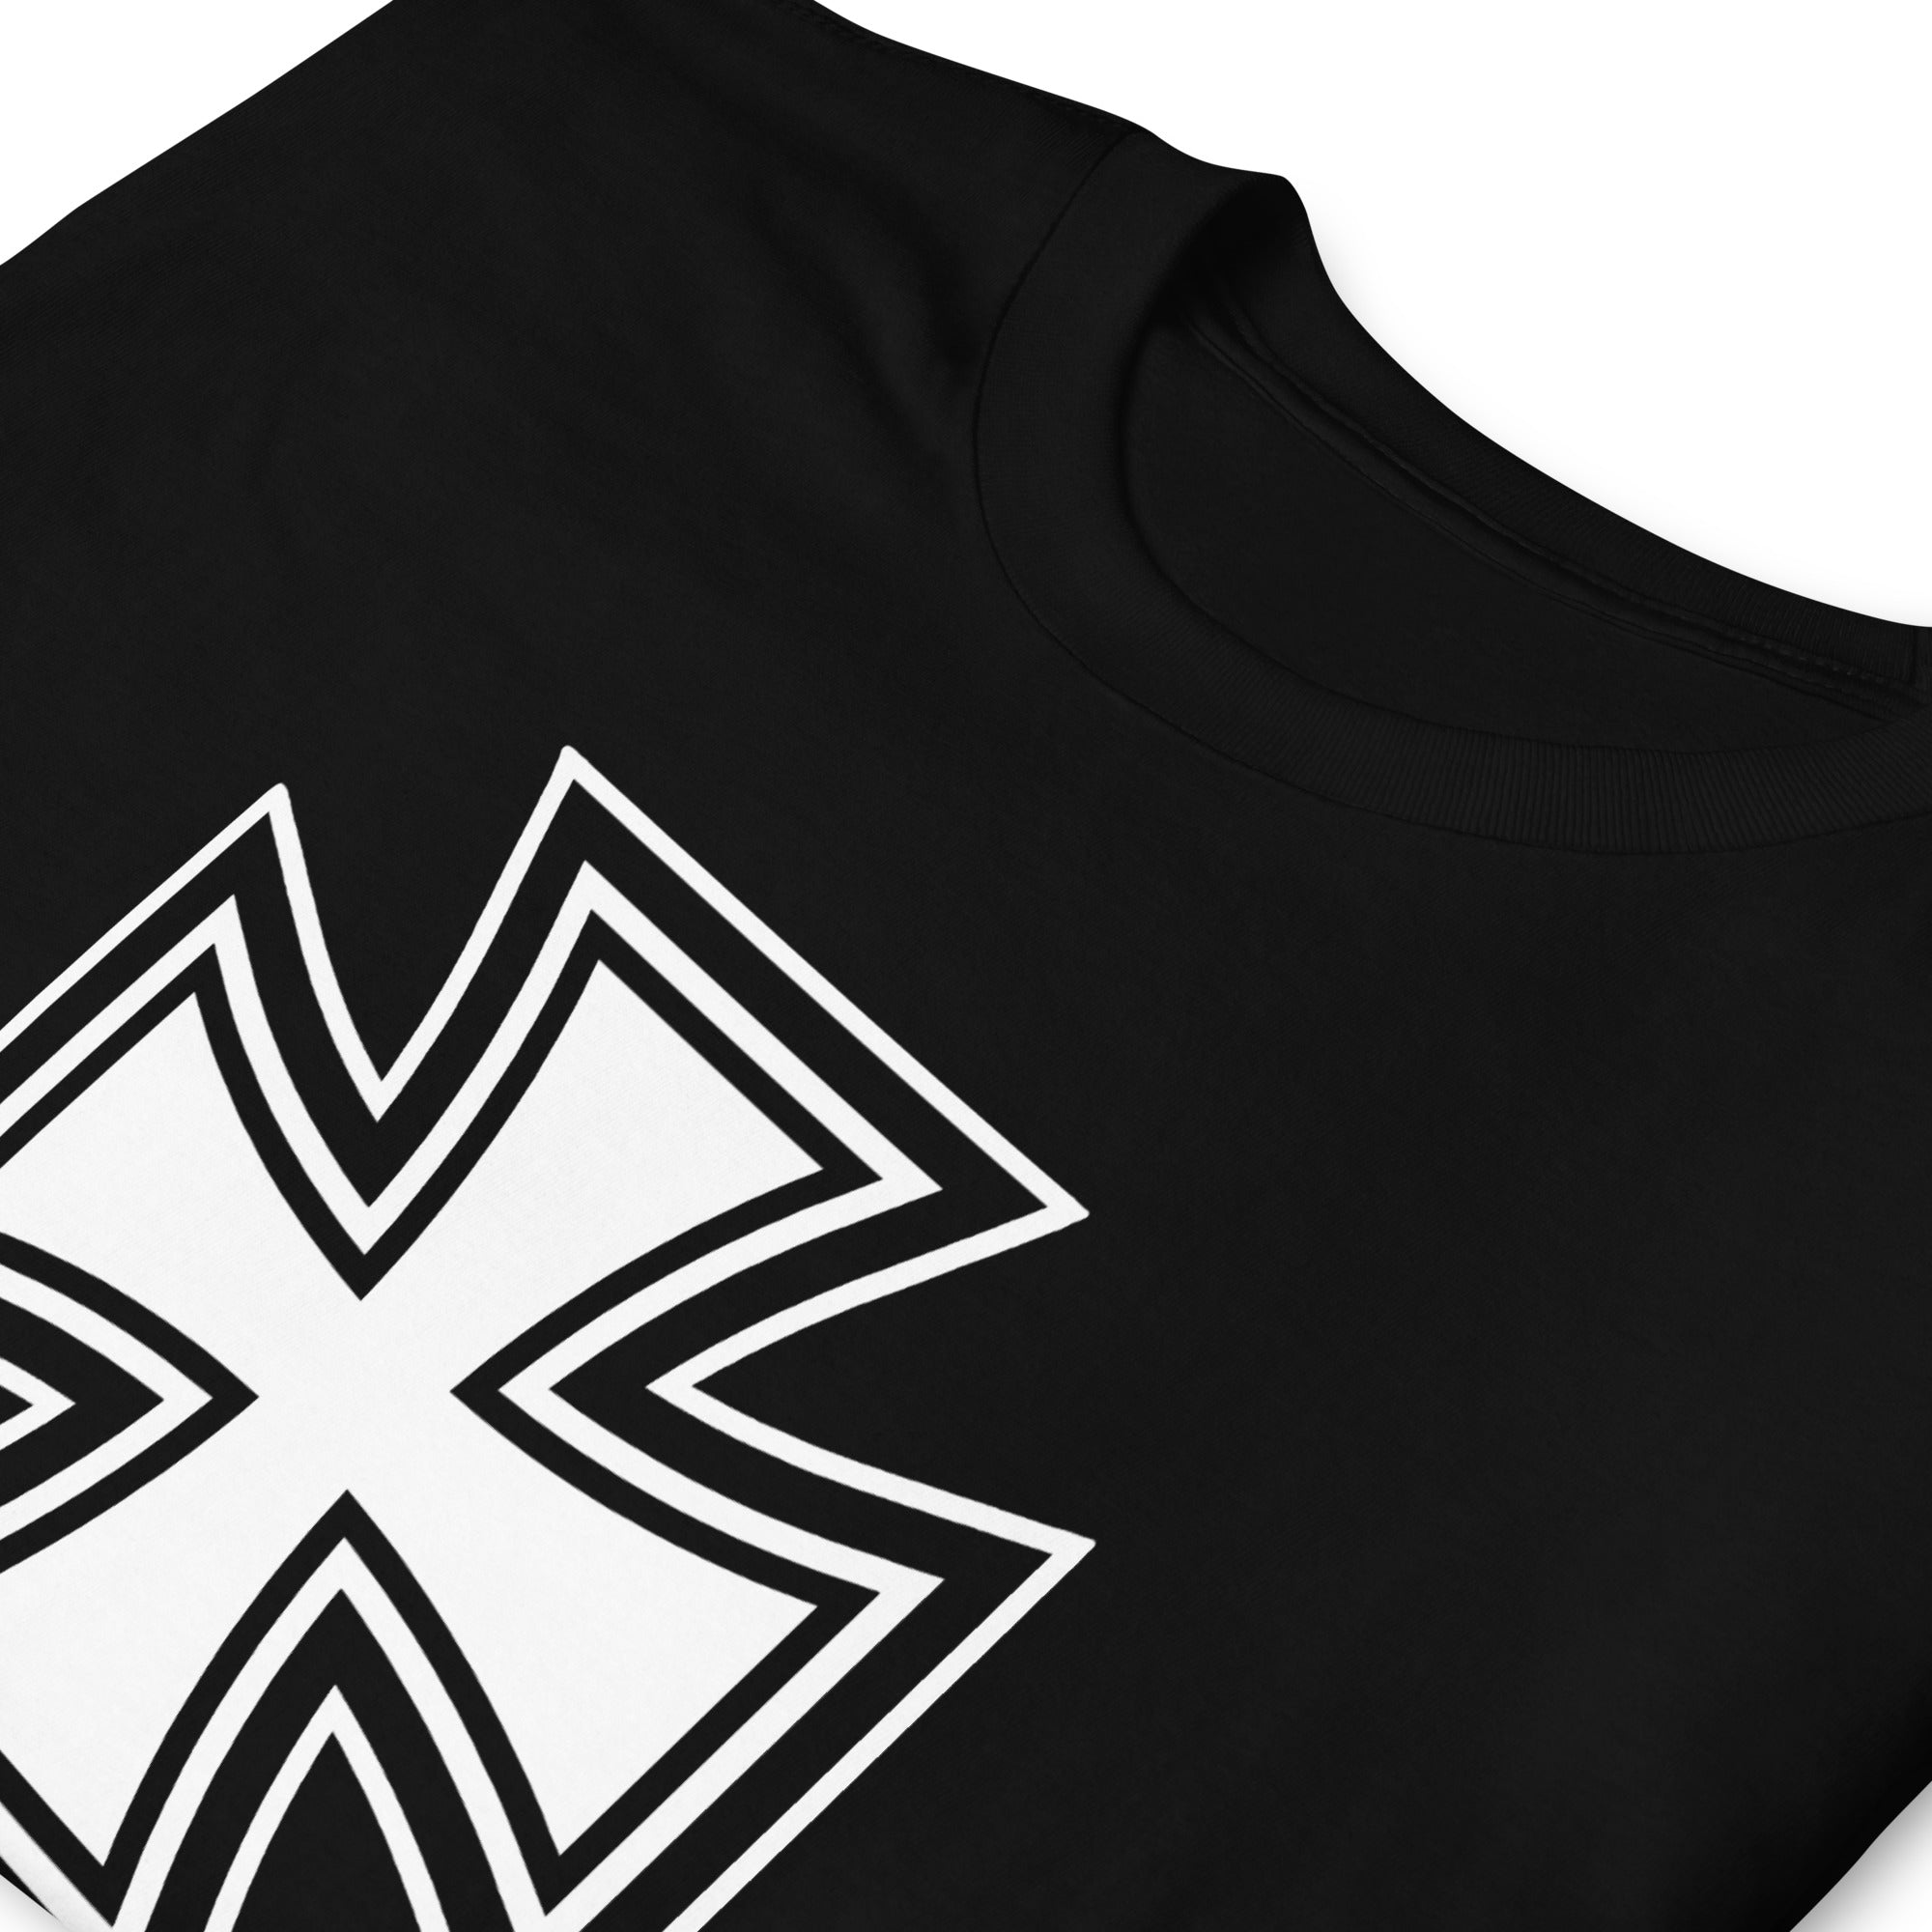 Black and White Occult Biker Cross Symbol Short-Sleeve T-Shirt